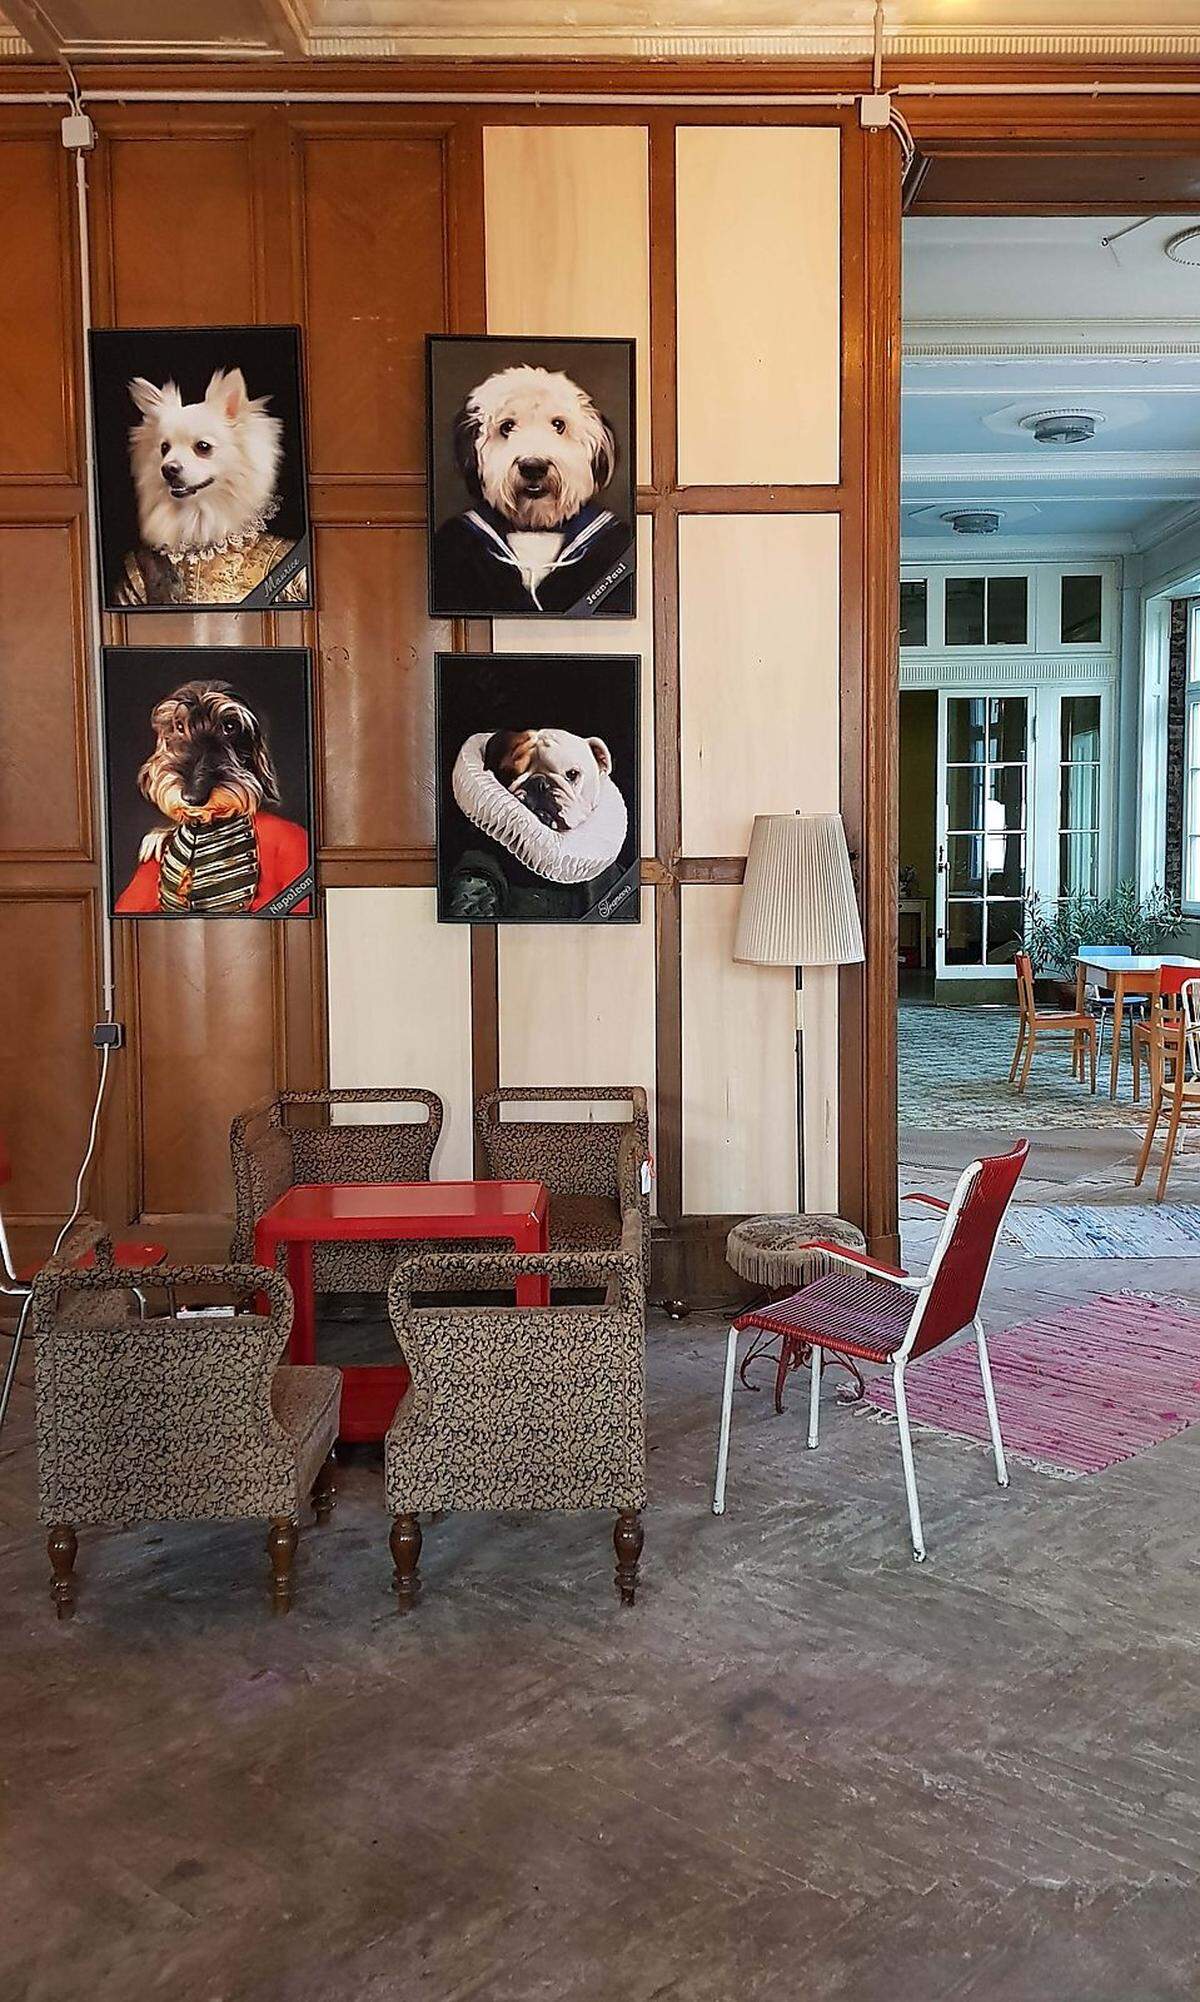 Die Hundtypen an der Wand stammen von einem niederländischen Künstler. Sie haben die Hot Dogs beeinflusst, die hier Haute Dogs genannt werden und die Namen der porträtierten Hunde tragen. Merlin etwa ist der Namensgeber für ein Hot Dog mit Pretzel Chicken (also in einer Brezelpanier herausgebackenem Hühnerfleisch) und Yuzu-Mayonnaise. Die Variante Napoleon kommt mit Beef Rib, Gänseleber und Trüffel daher. Außerdem kommen aus der Küche grandiose Halloumi-Fritten oder solche aus Süßkartoffeln.